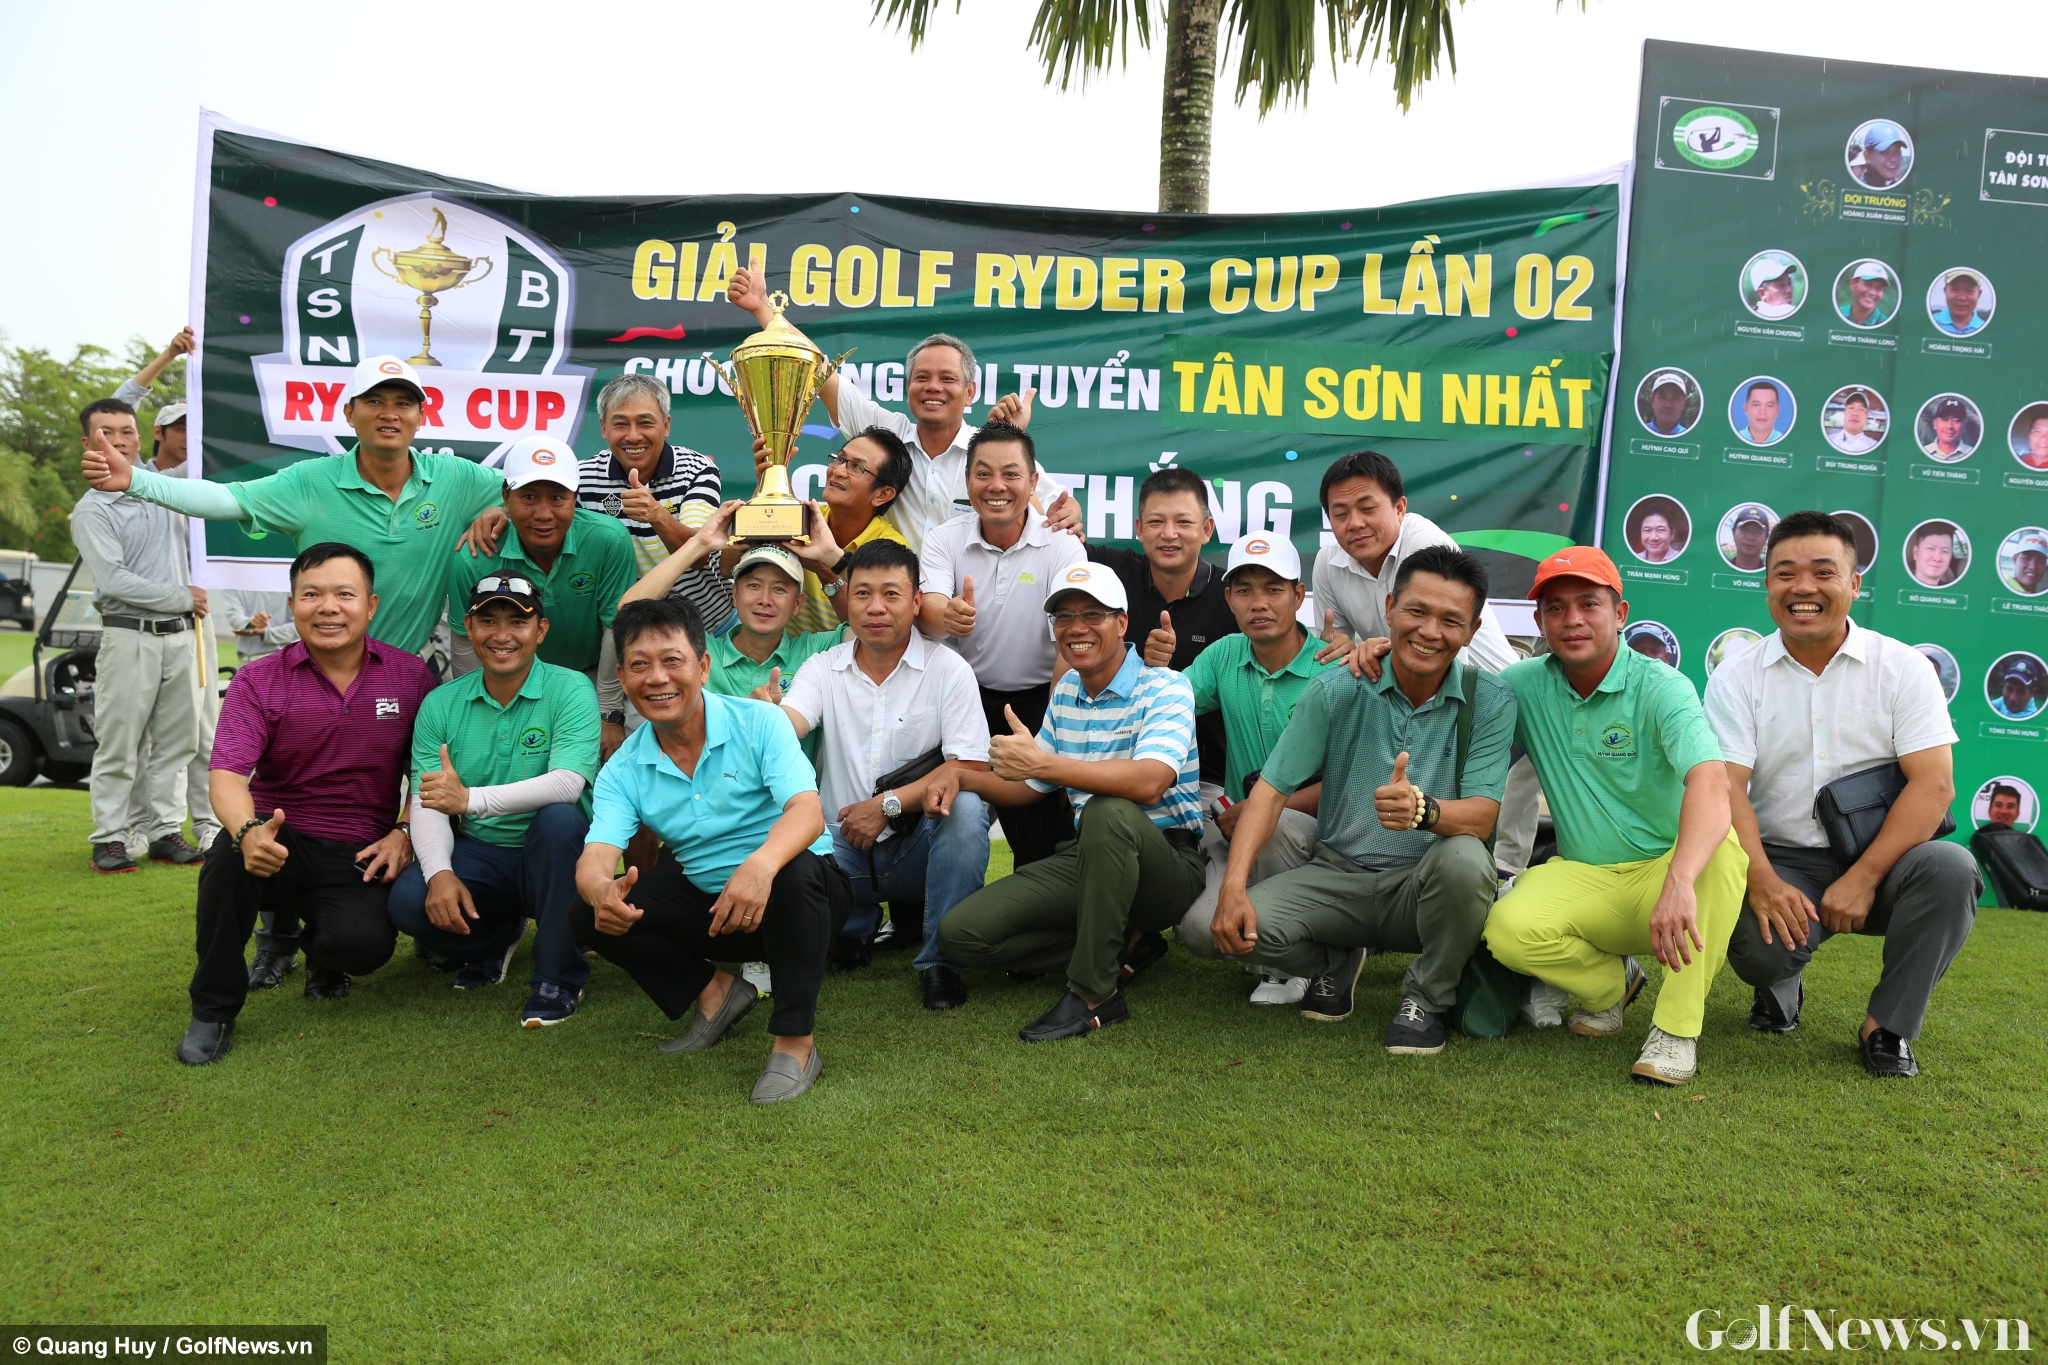 Ryder Cup Tân Sơn Nhất - Bình Thuận: Đội chủ nhà giành chiến thắng đầy thuyết phục!